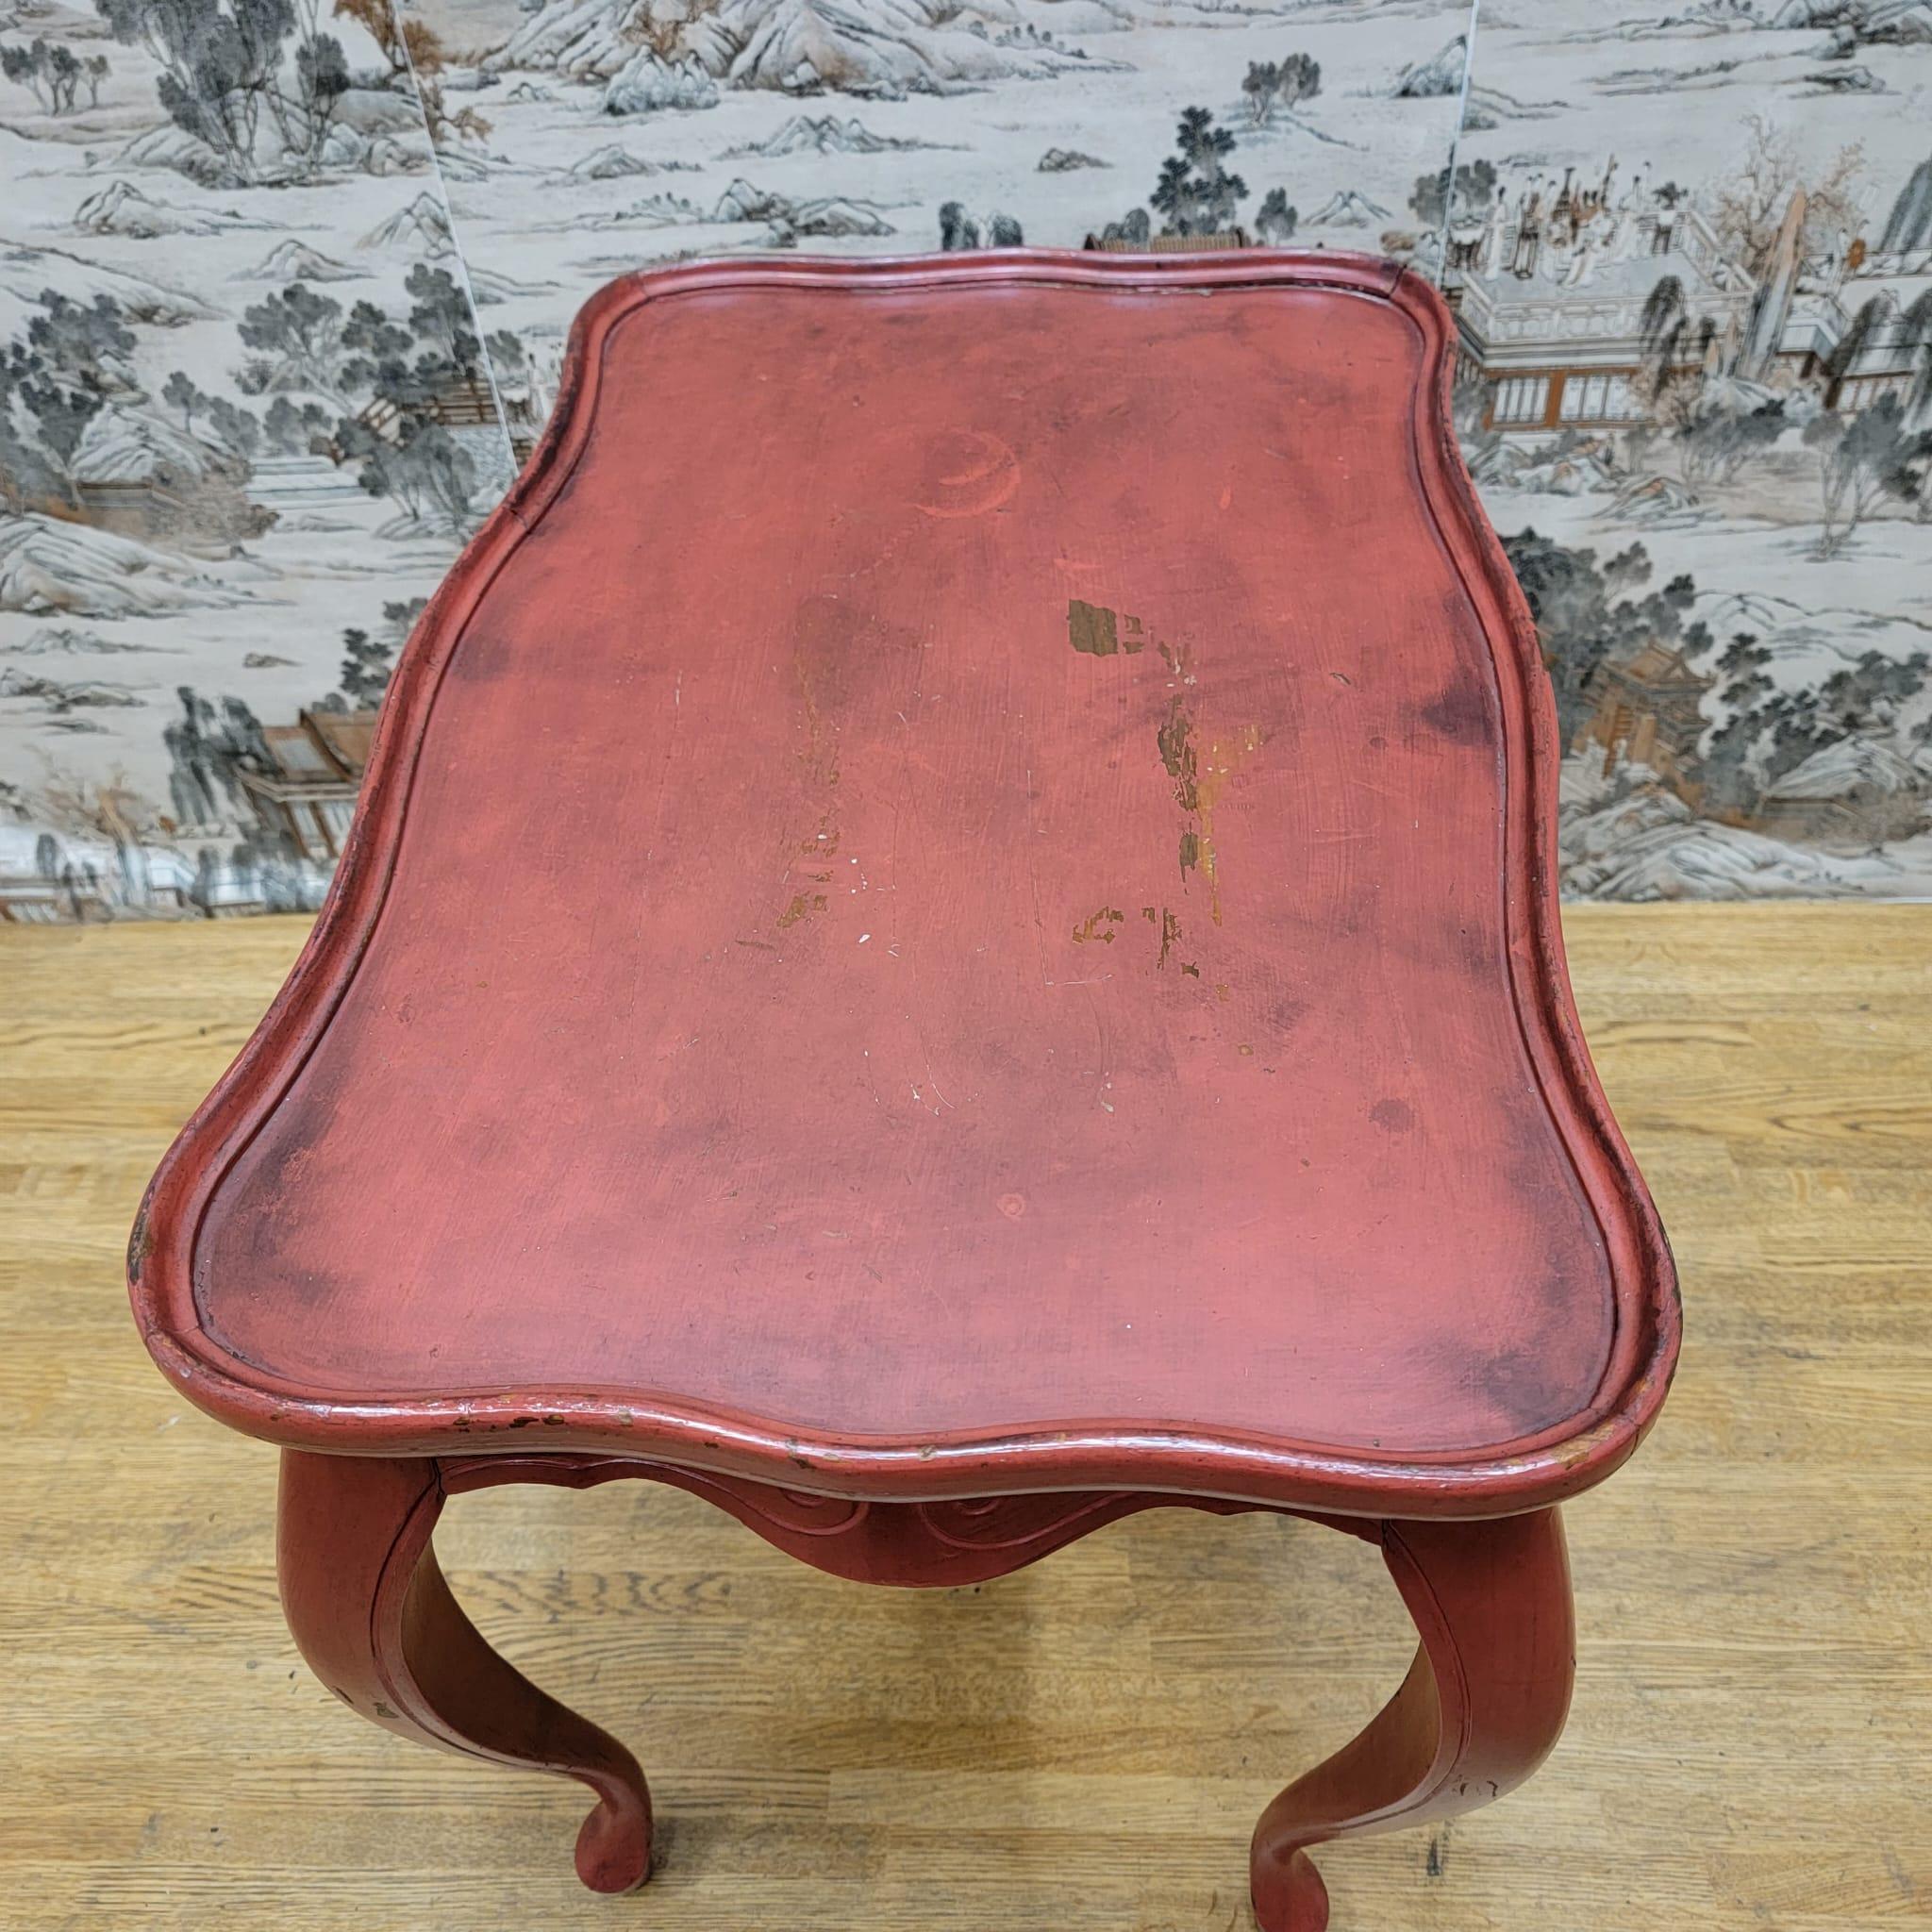 Vintage Red Table d'appoint en chêne peint à la main

Cette table d'appoint en chêne a été peinte à la main et conserve sa couleur et sa patine d'origine. Fabriquée en Caroline du Nord, aux États-Unis, c'est une belle table qui égaiera n'importe